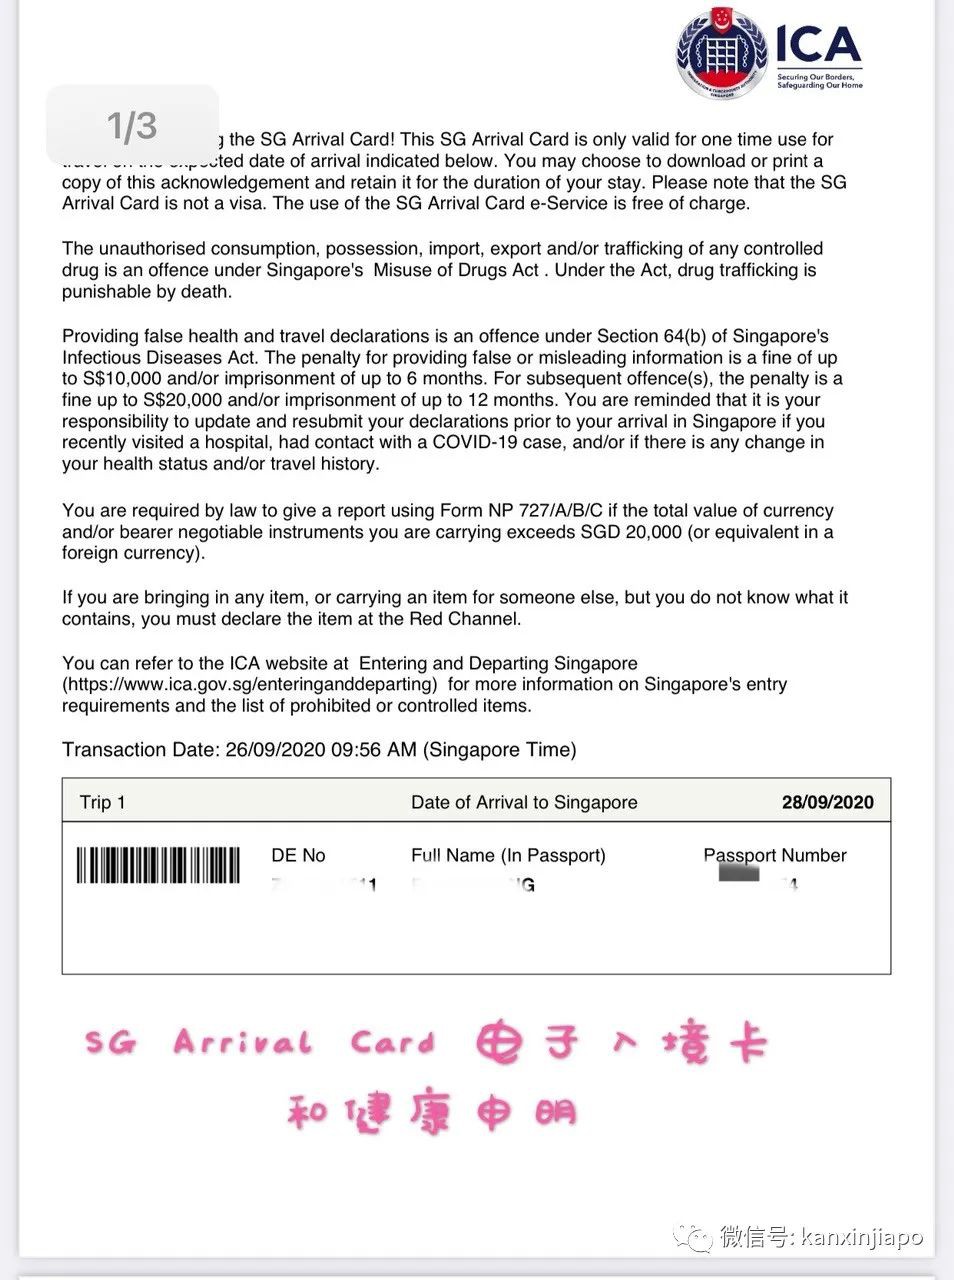 众多航班熔断，到底怎么买机票？EP从重庆飞回新加坡的暖心旅程